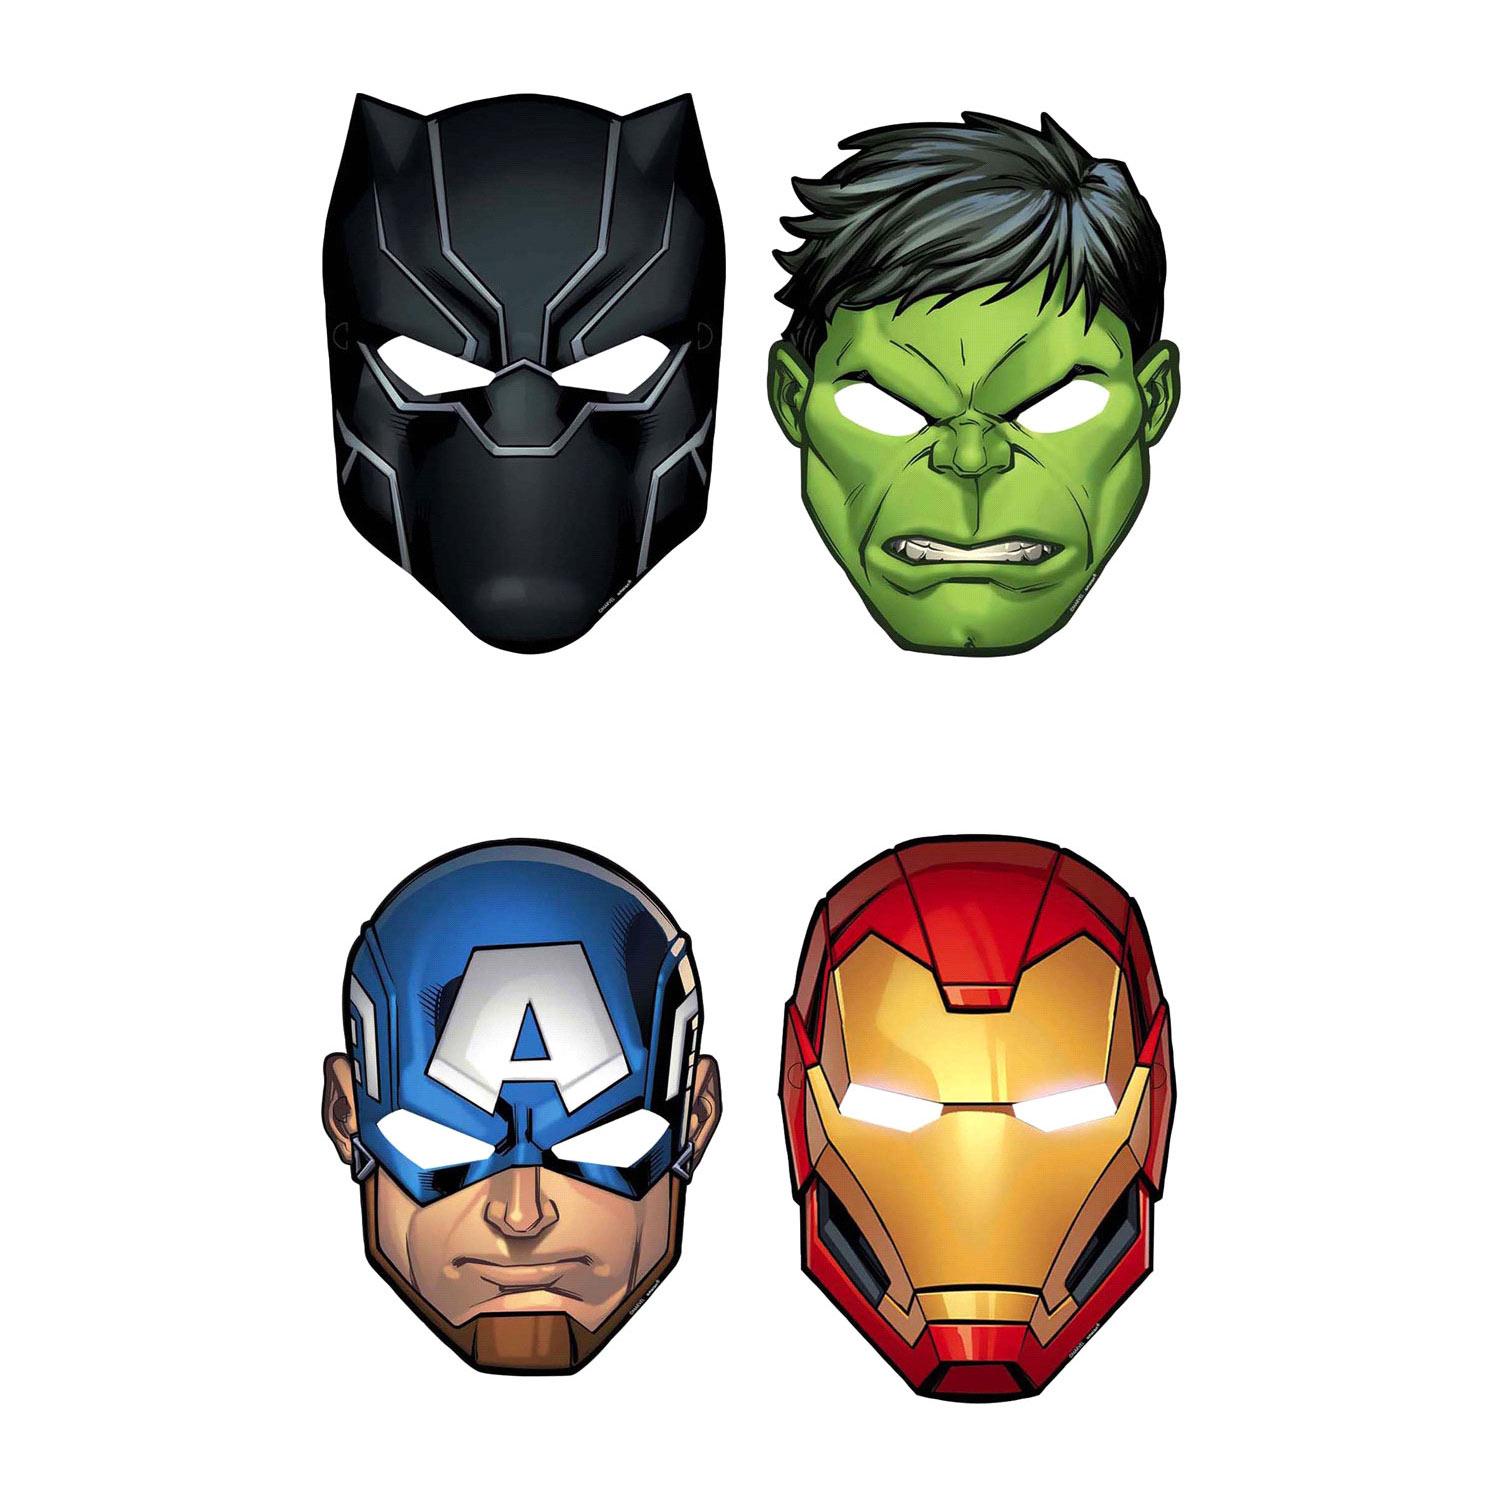 Marvel Avengers Powers Unite Paper Masks 8pcs Party Favors - Party Centre - Party Centre